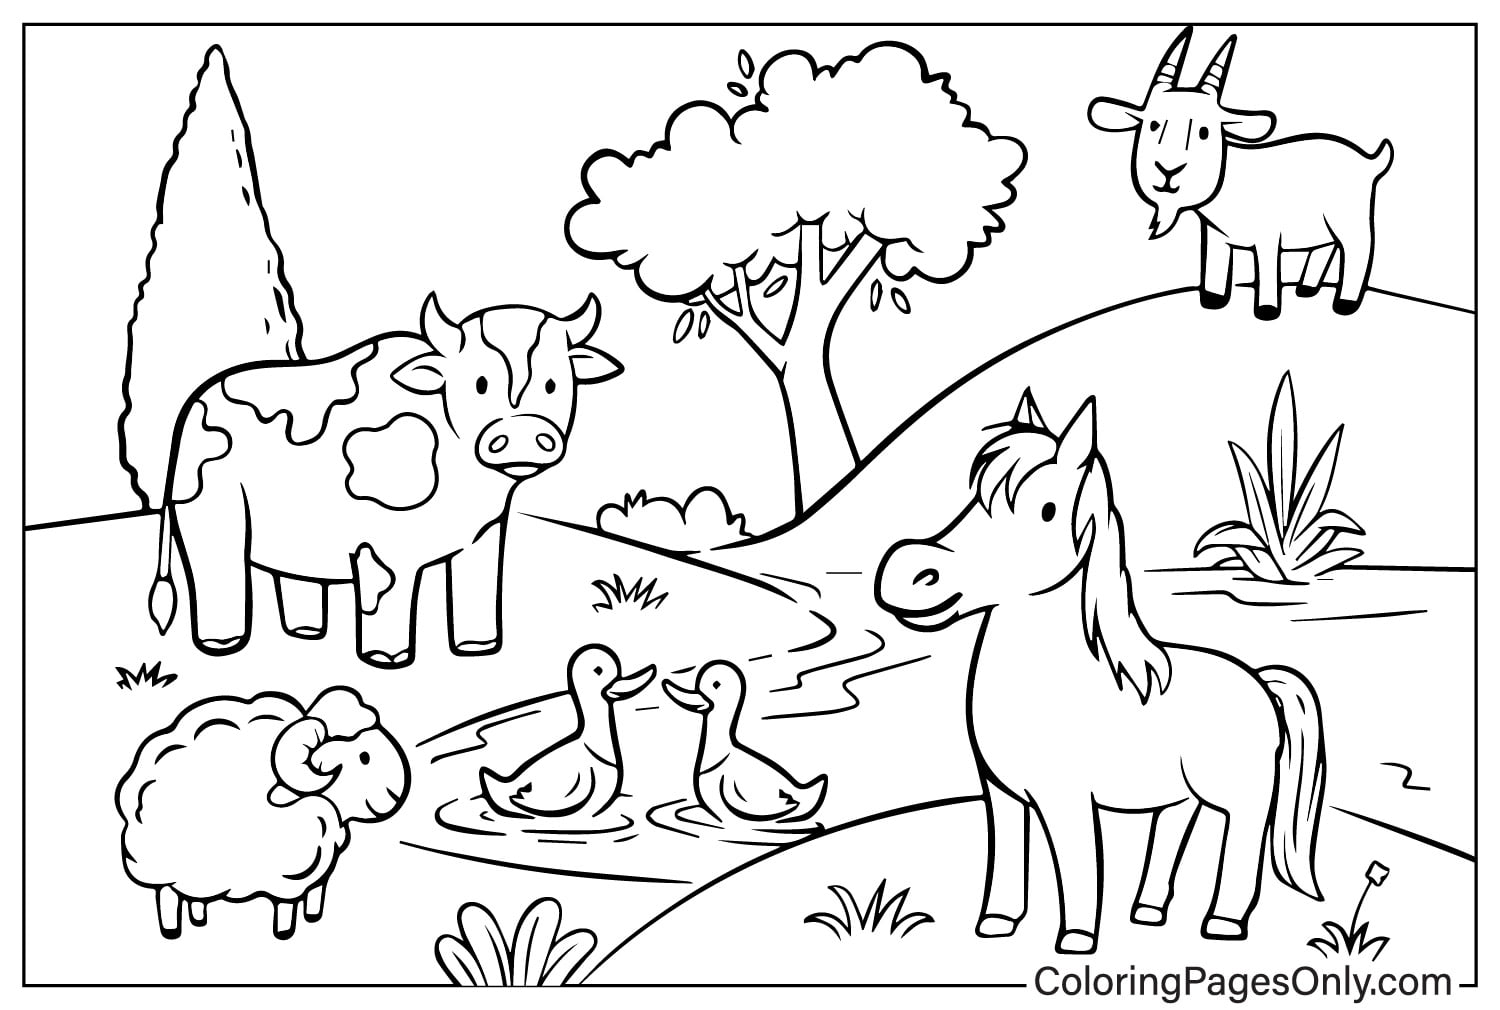 Animaux de la ferme Doodle de Farm Animal